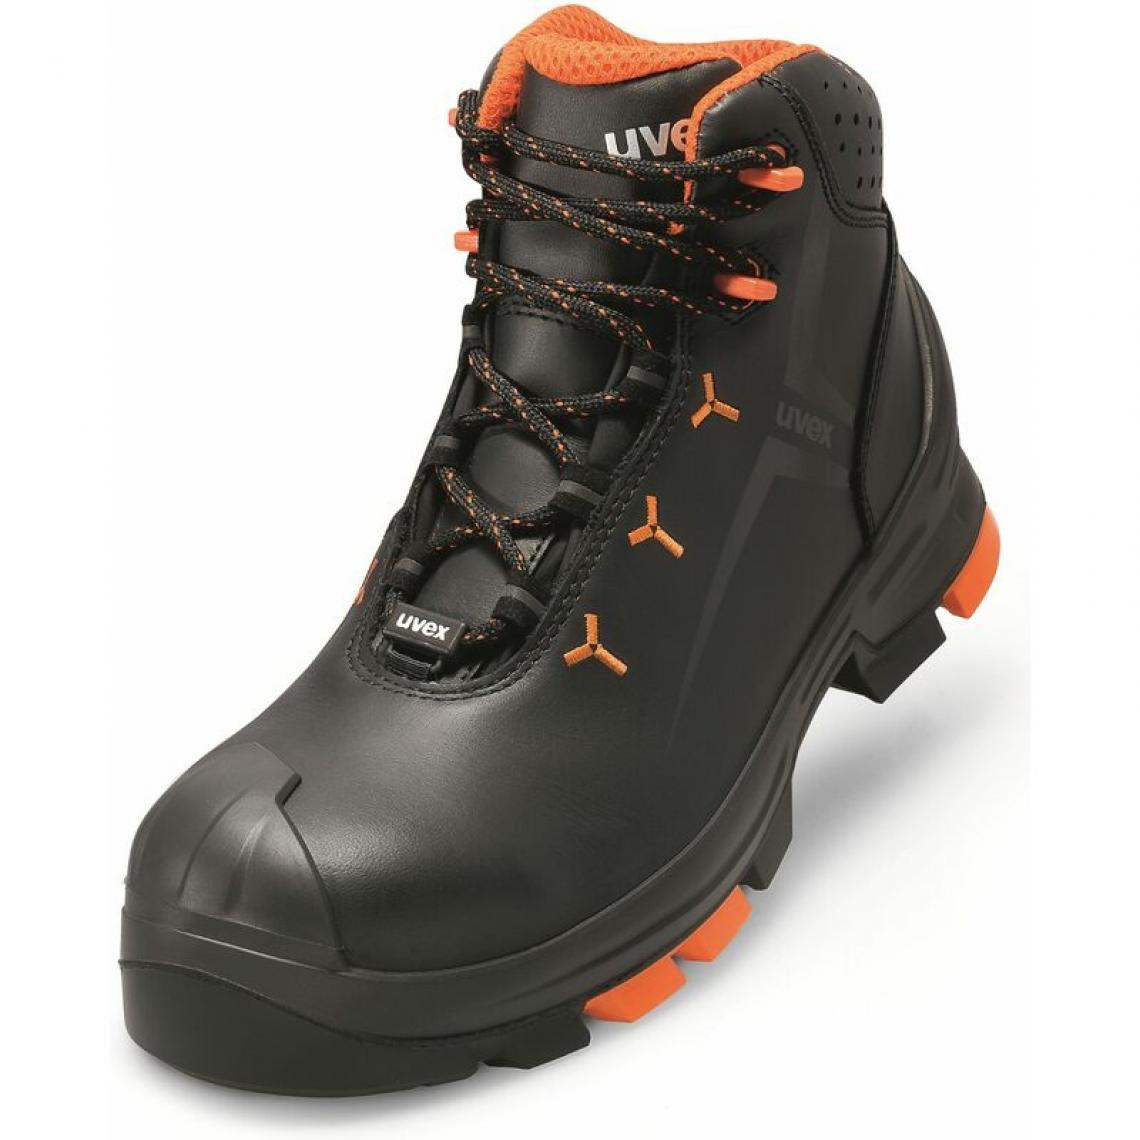 Uvex - uvex 2 Chaussures montantes S3 SRC, T. 44, noir/orange () - Equipement de Protection Individuelle